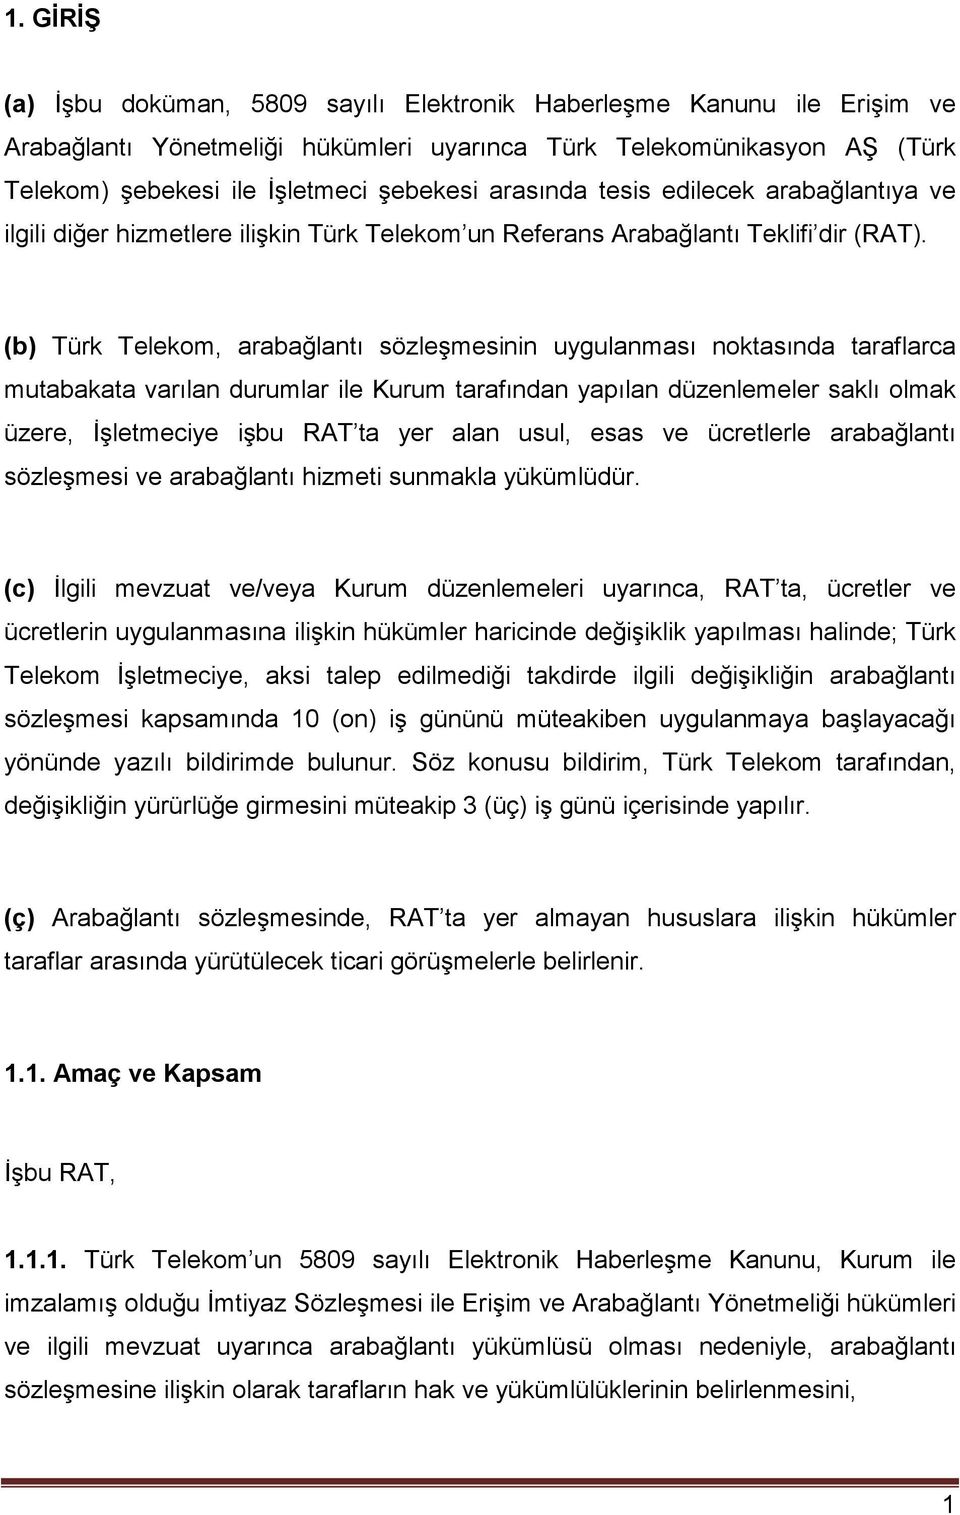 (b) Türk Telekom, arabağlantı sözleşmesinin uygulanması noktasında taraflarca mutabakata varılan durumlar ile Kurum tarafından yapılan düzenlemeler saklı olmak üzere, İşletmeciye işbu RAT ta yer alan